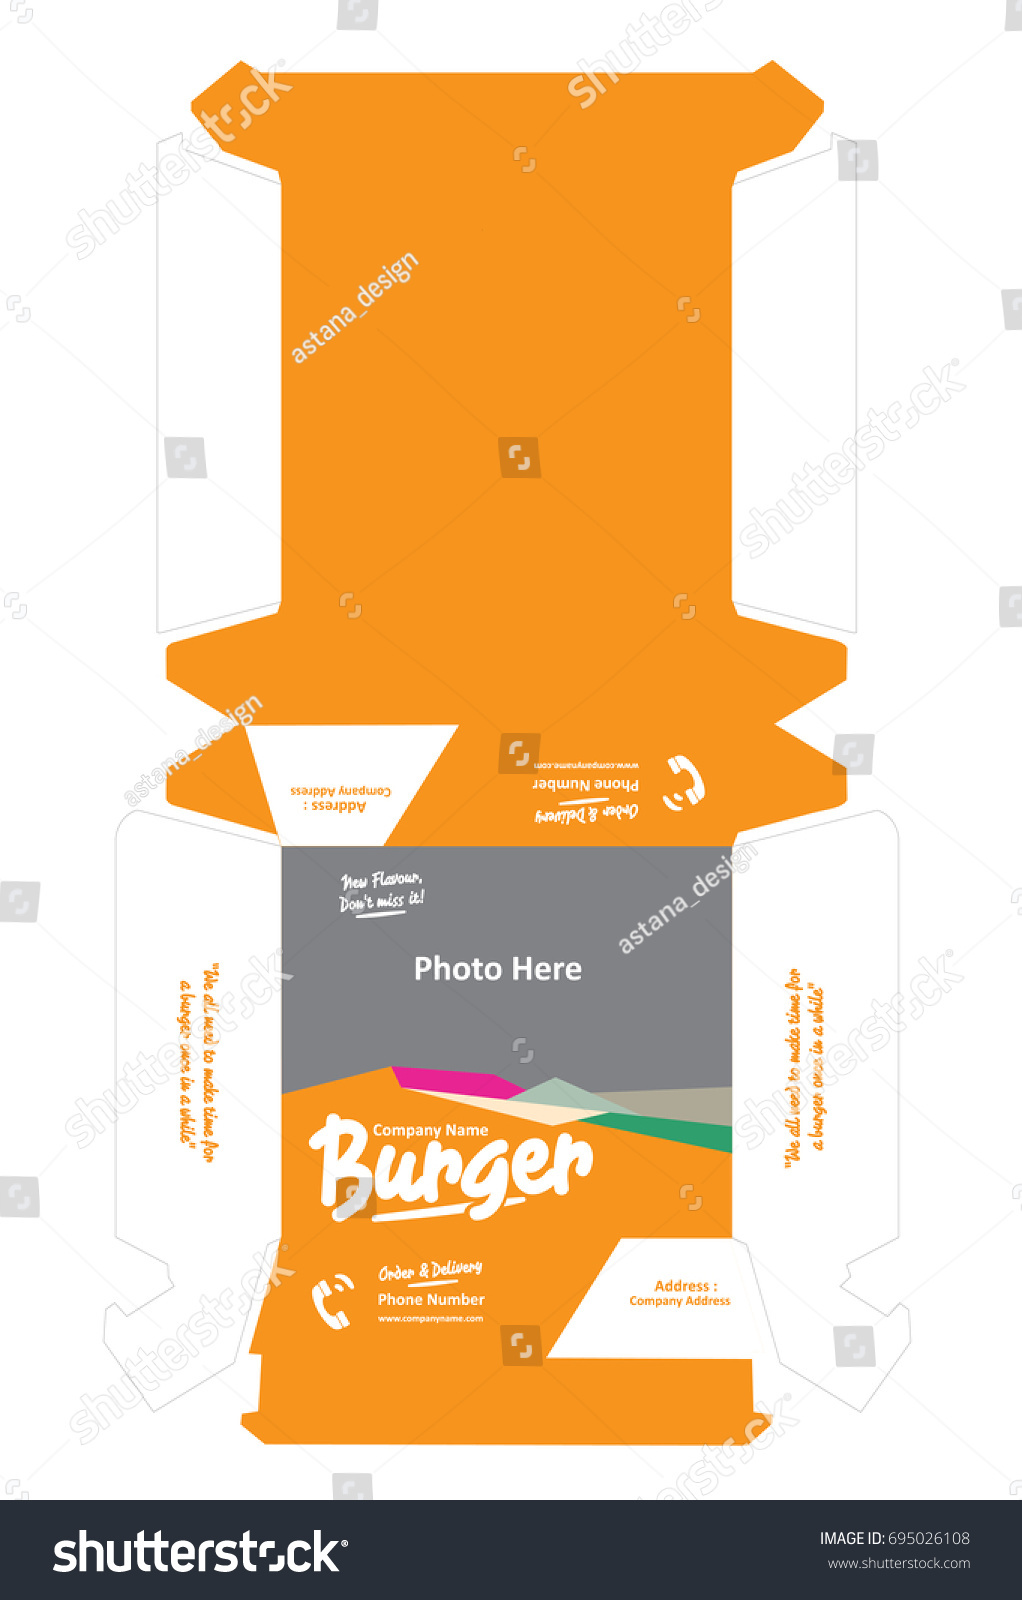 burger-box-packaging-template-design-695026108-shutterstock